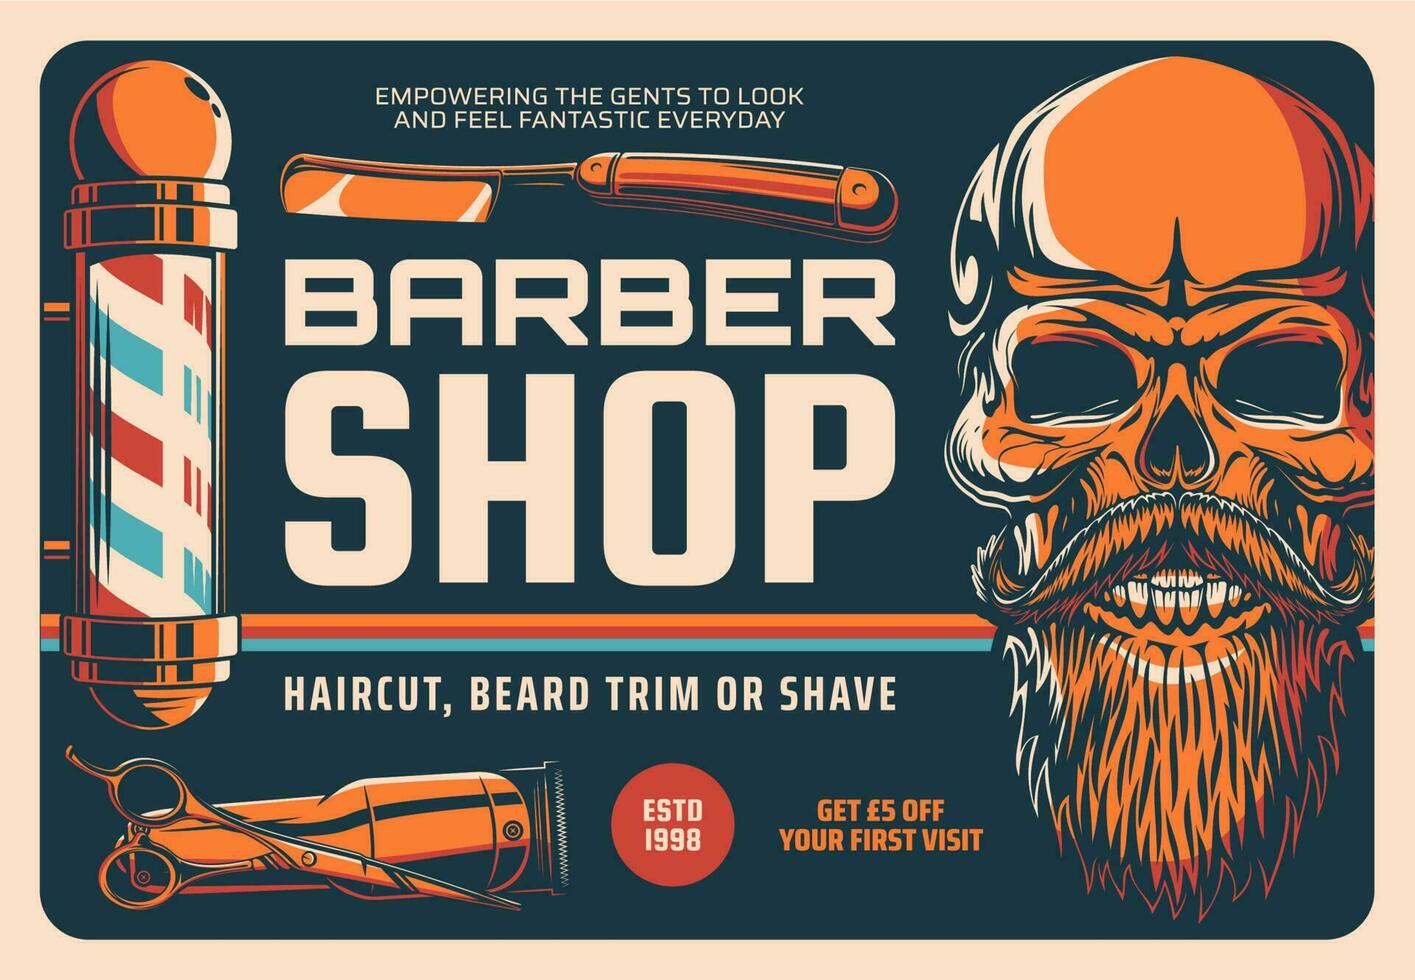 Friseurladen, Haarschnitt, Bart rasieren oder trimmen Banner vektor